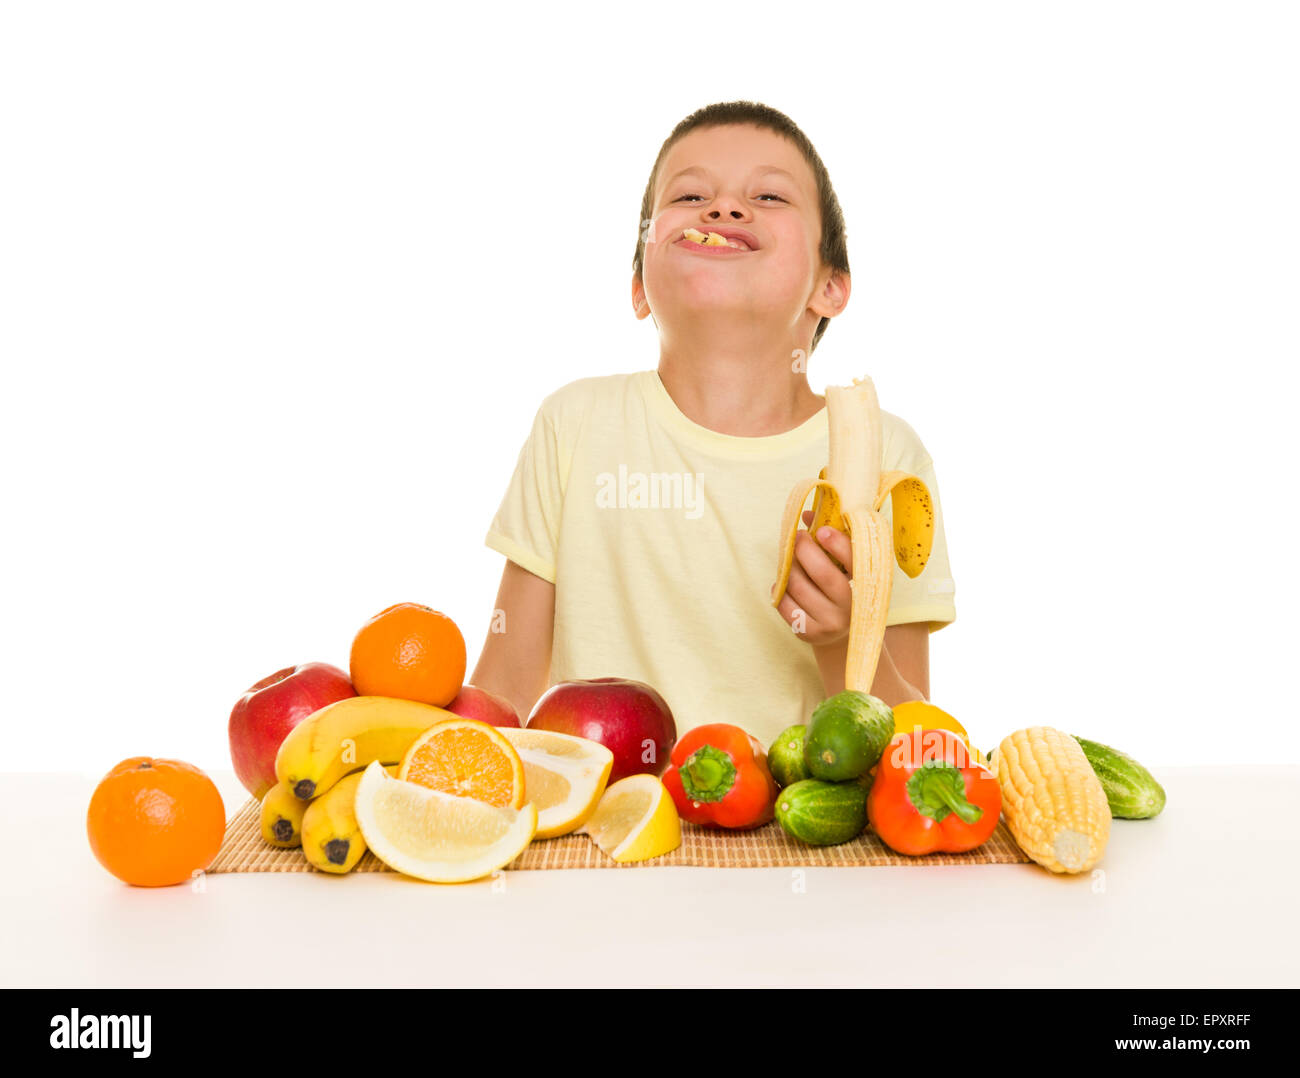 Junge mit Obst und Gemüse essen Bananen Stockfoto